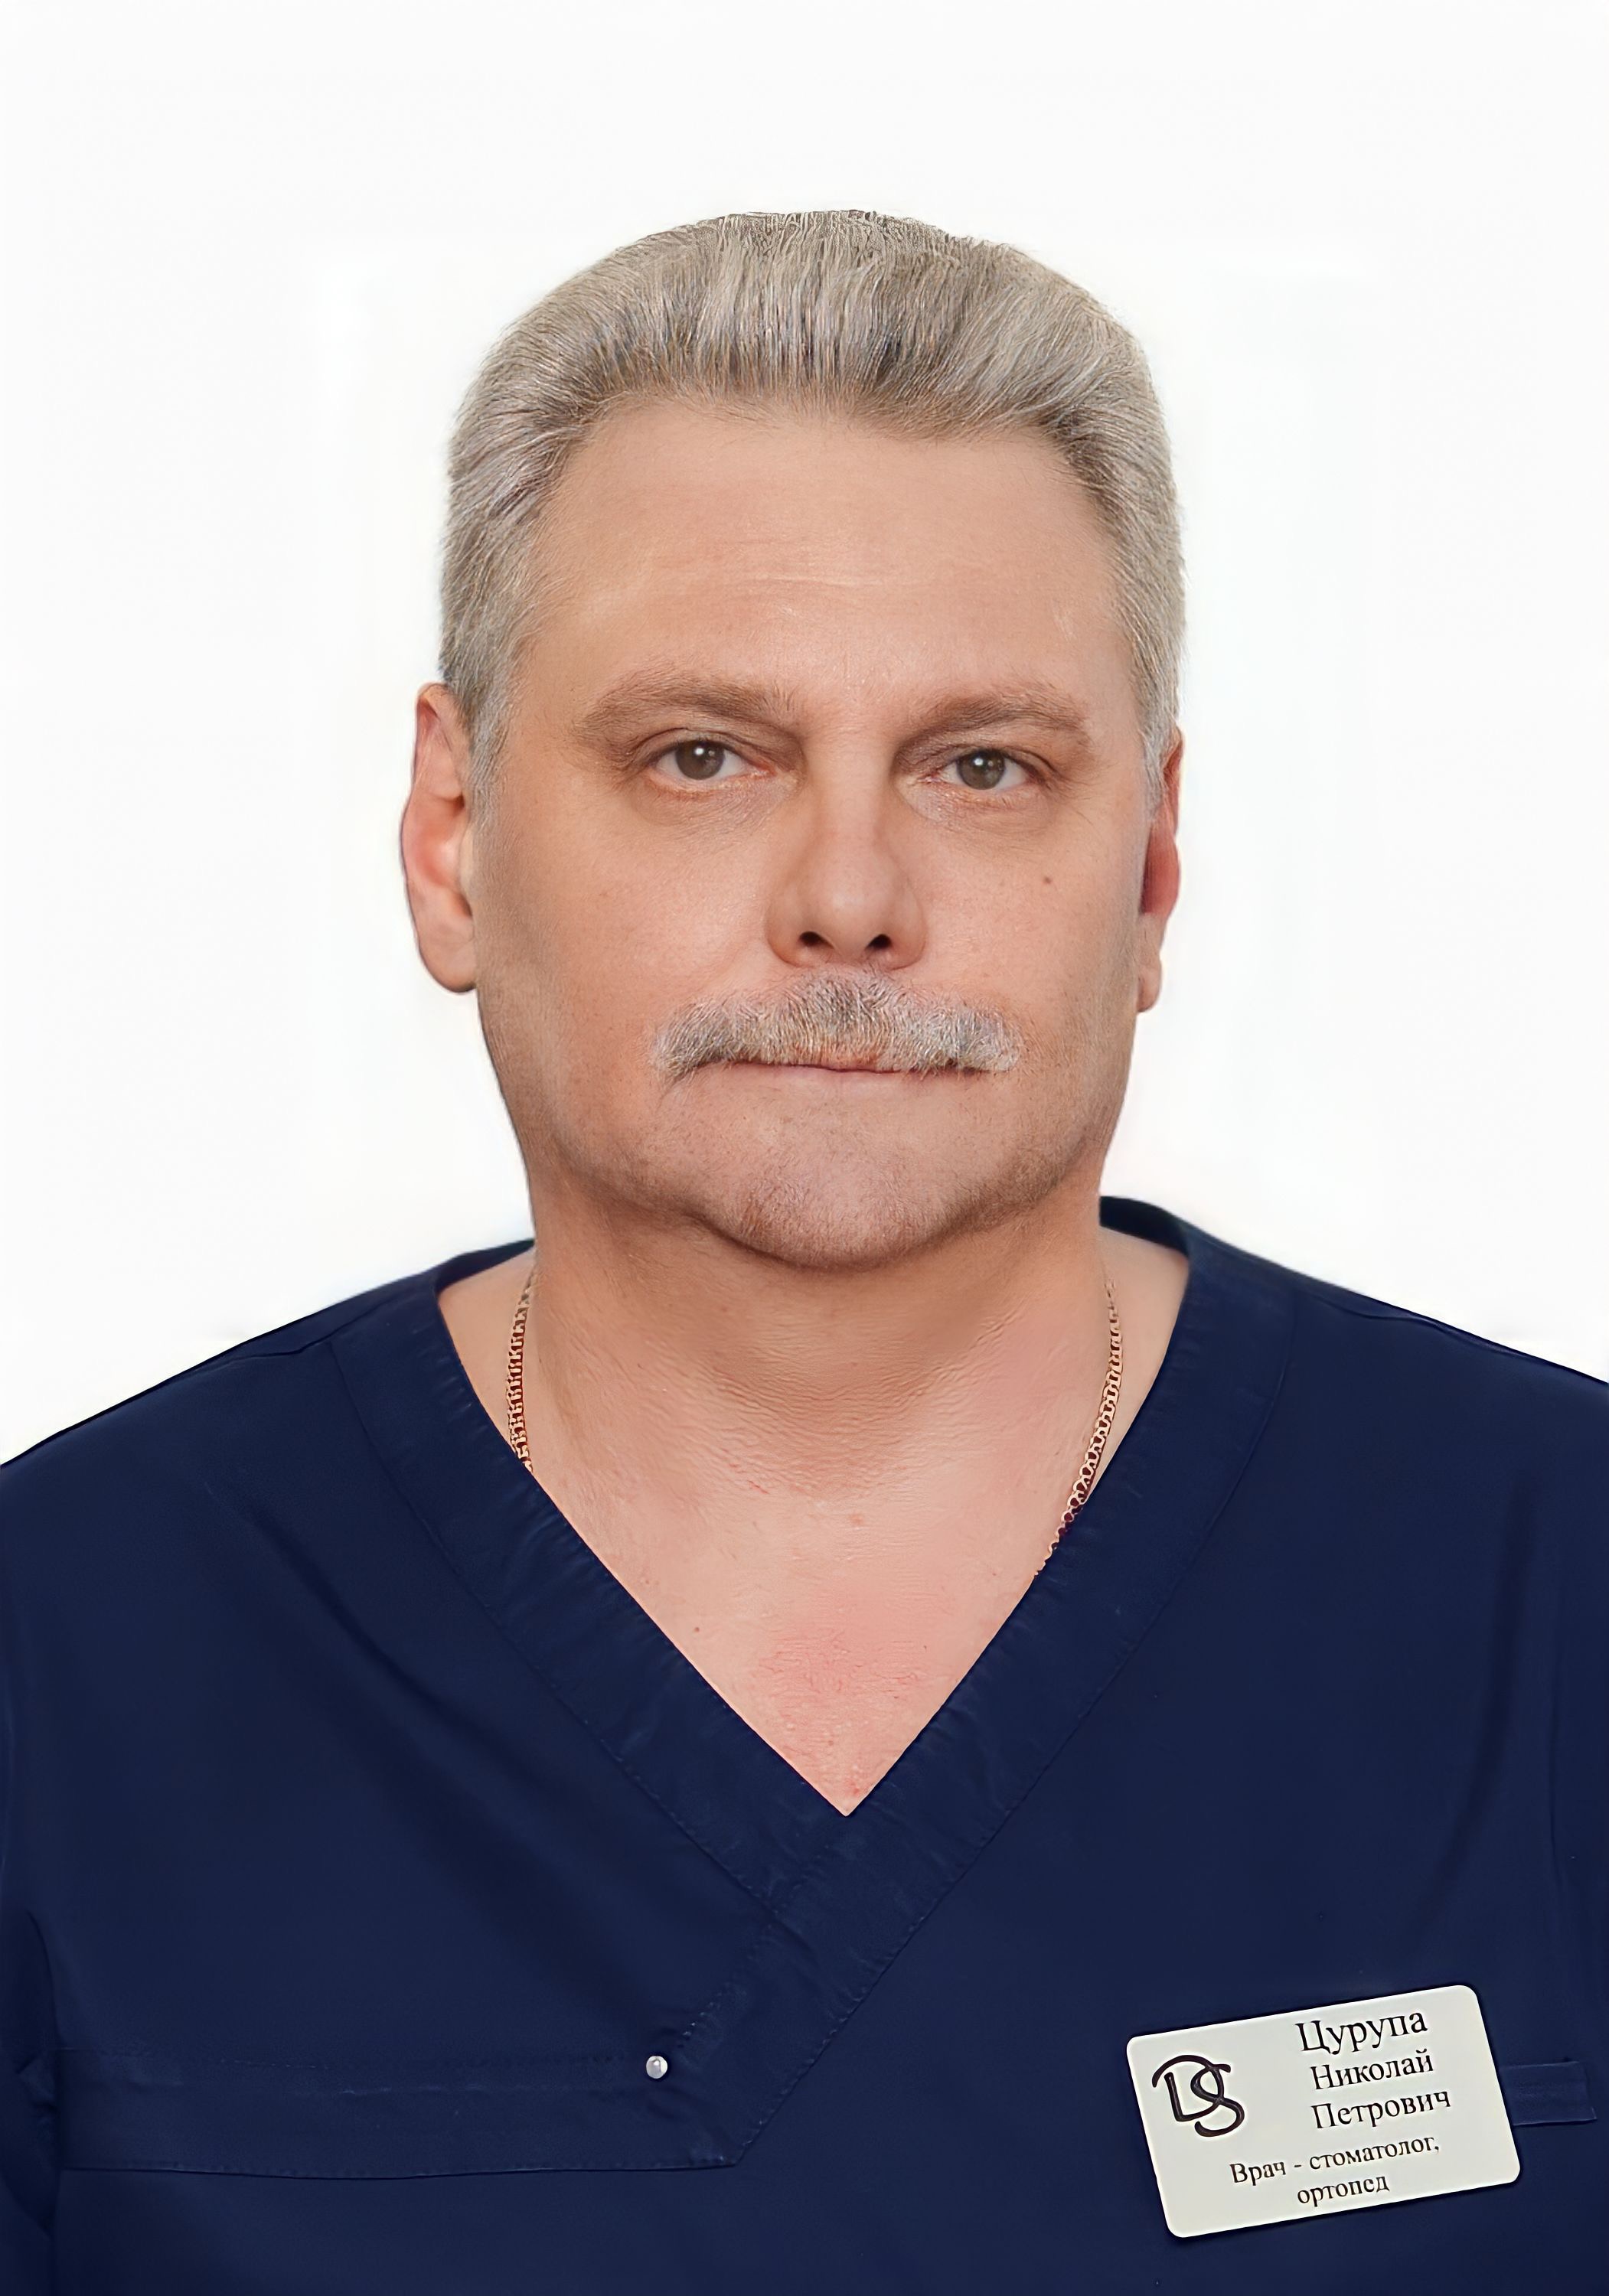 врач Цурупа Николай Петрович